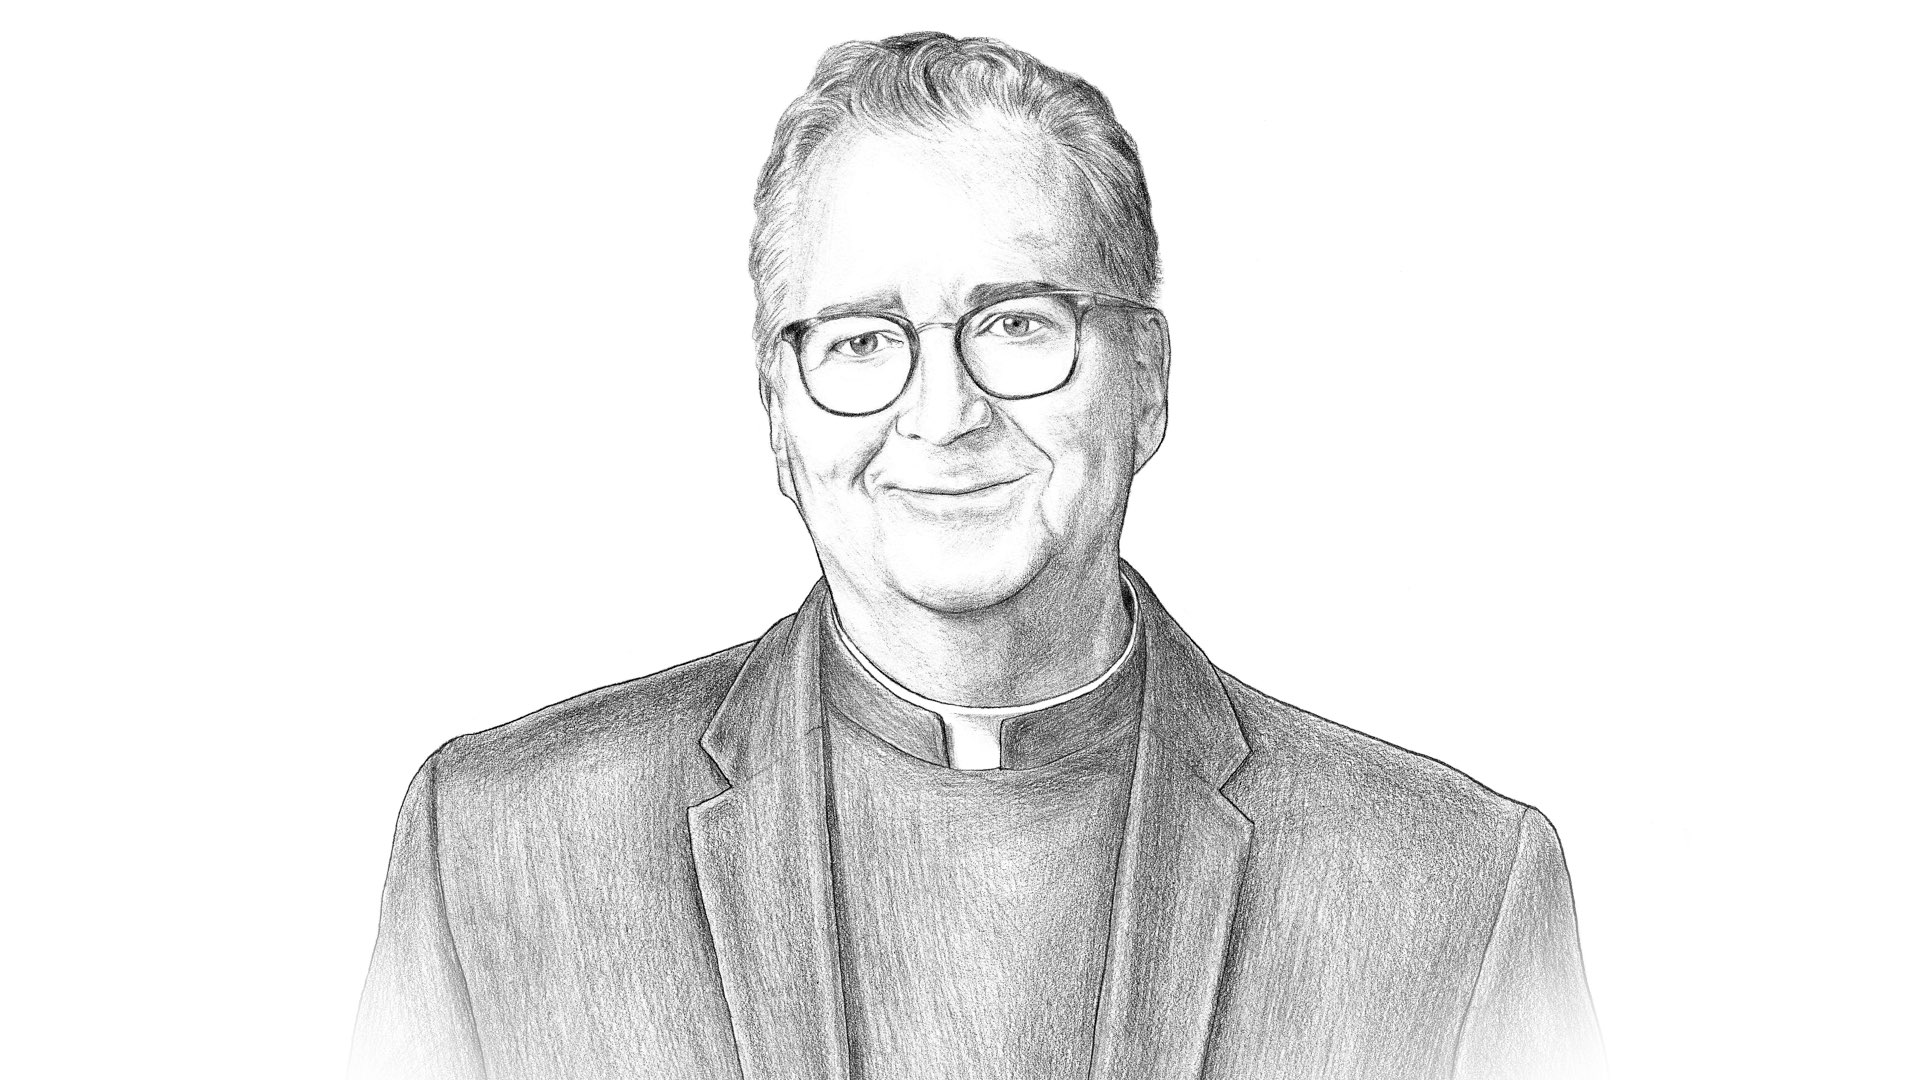 Illustration of Villanova University President the Reverend Peter M. Donohue.